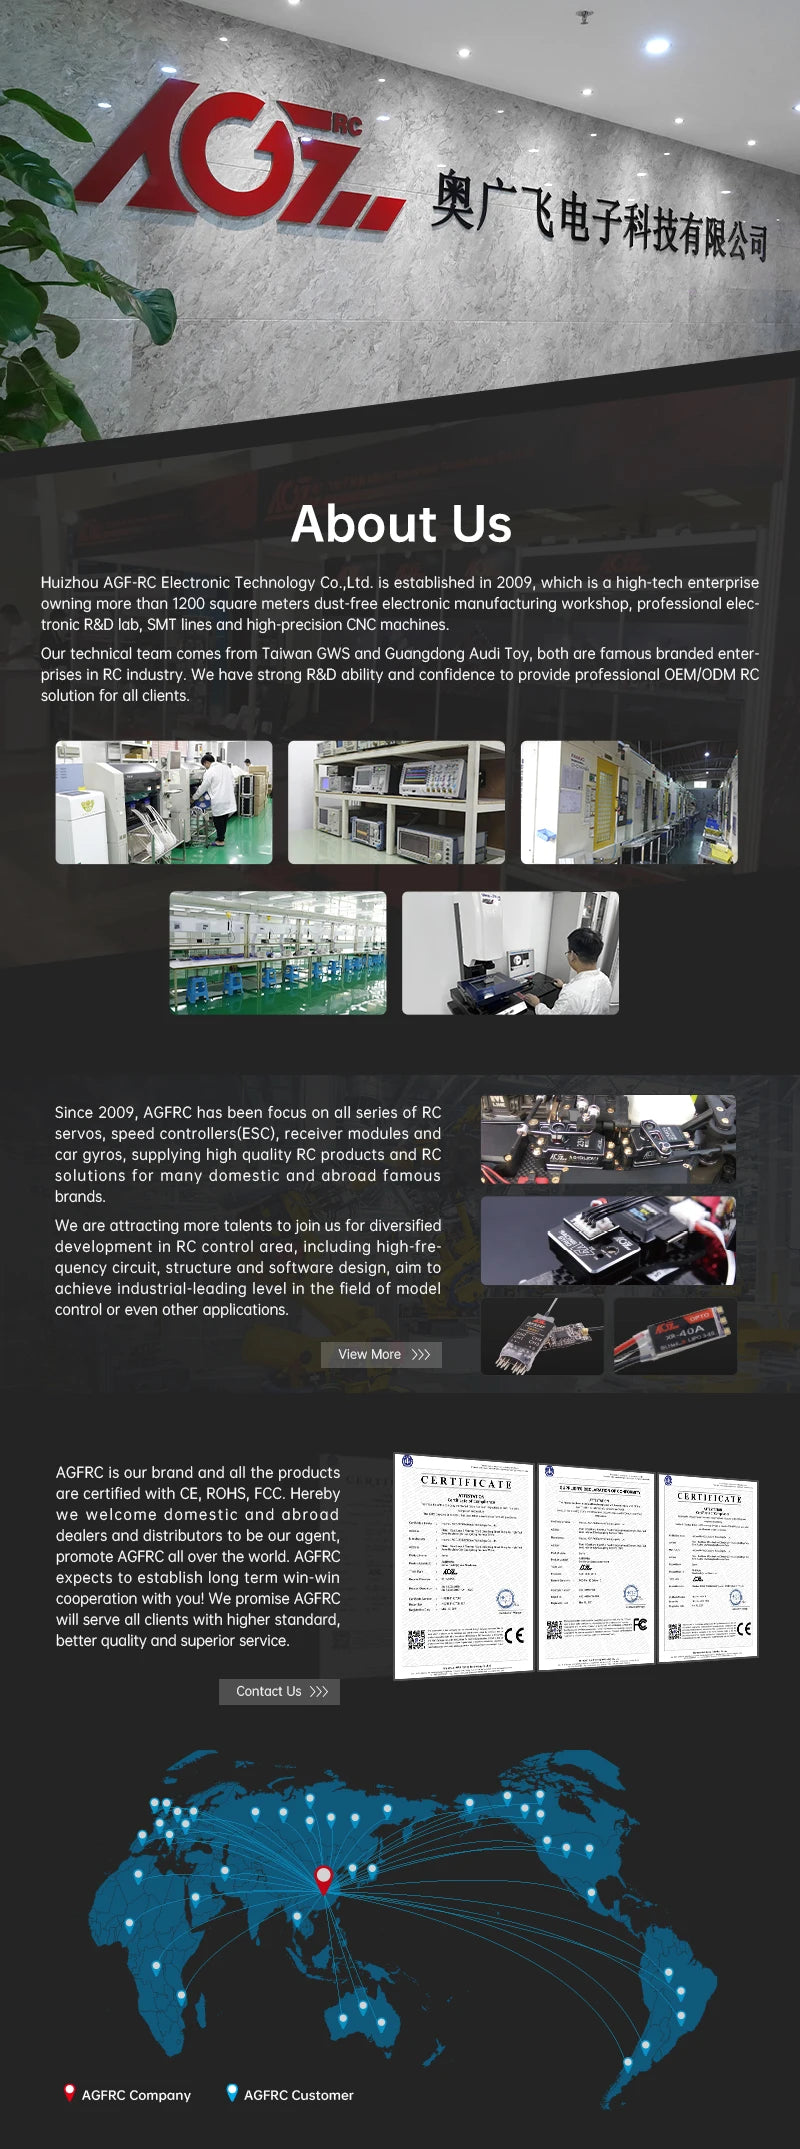 AGFRC Servo, Huizhou AGF-RC Electronic Technology Ltd is a high-tech enterprise .